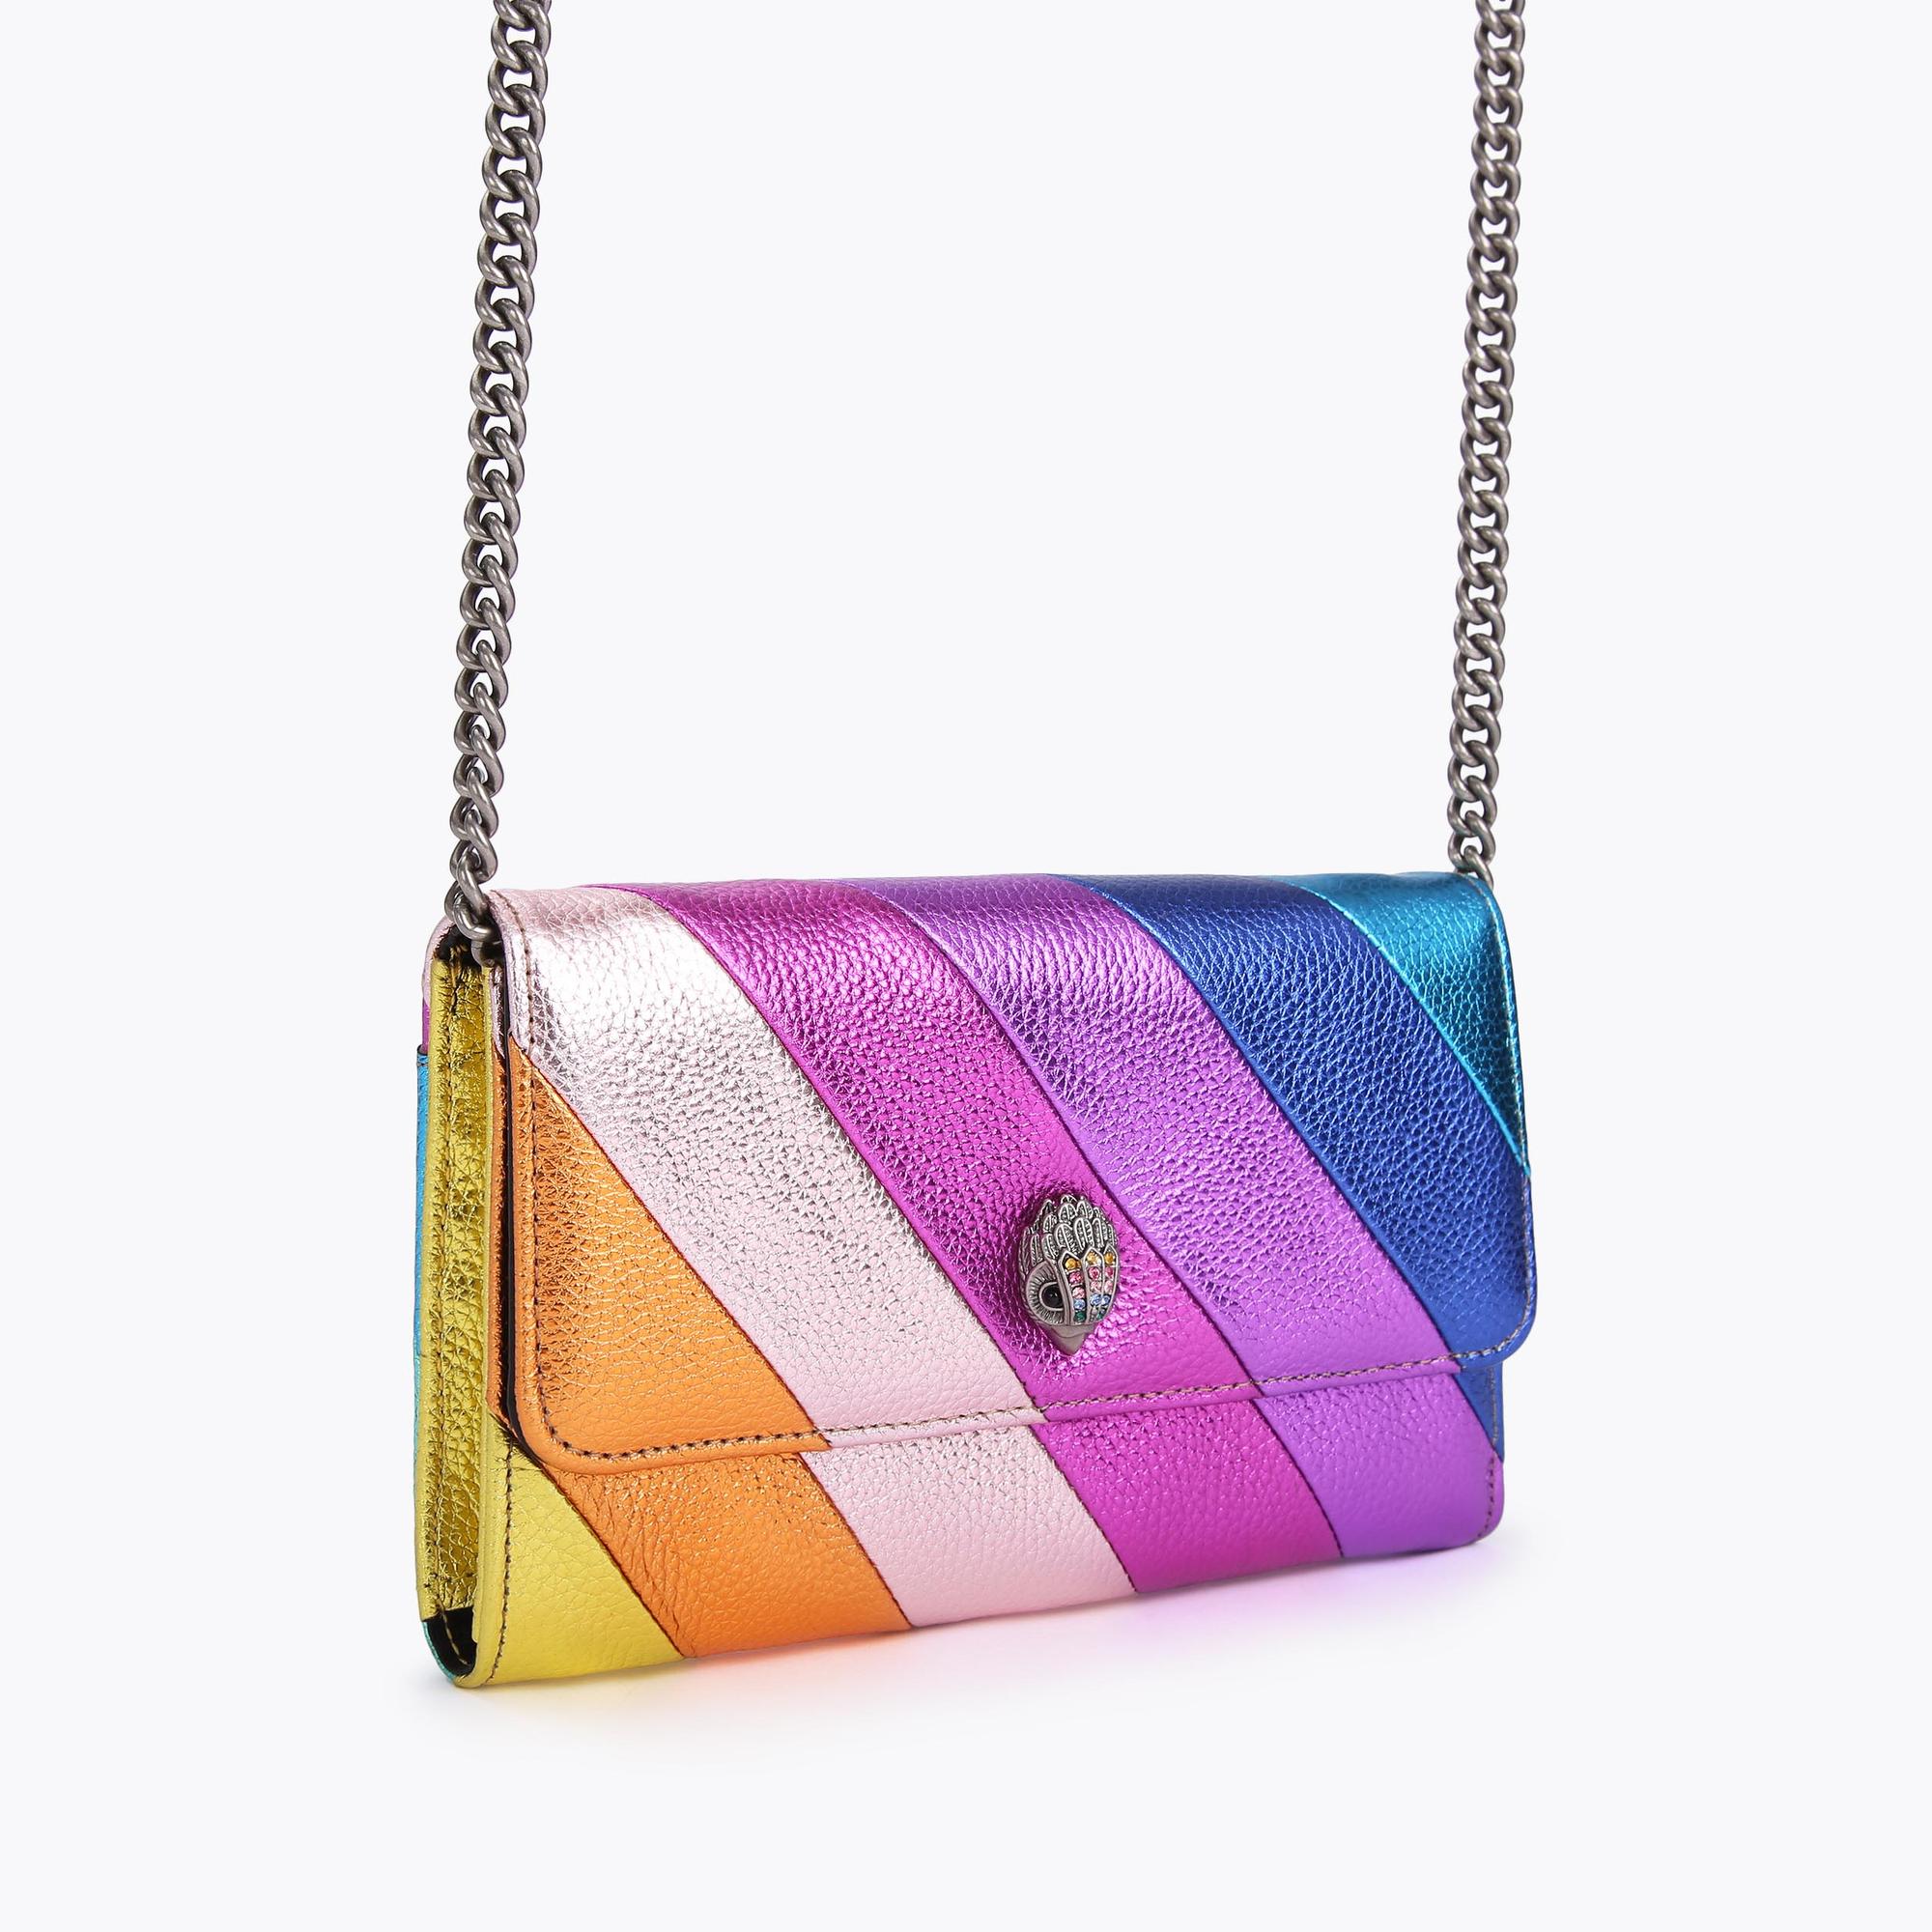 K STRIPE CHAIN WALLET Kensington Rainbow Stripe Leather Bag by KURT GEIGER  LONDON